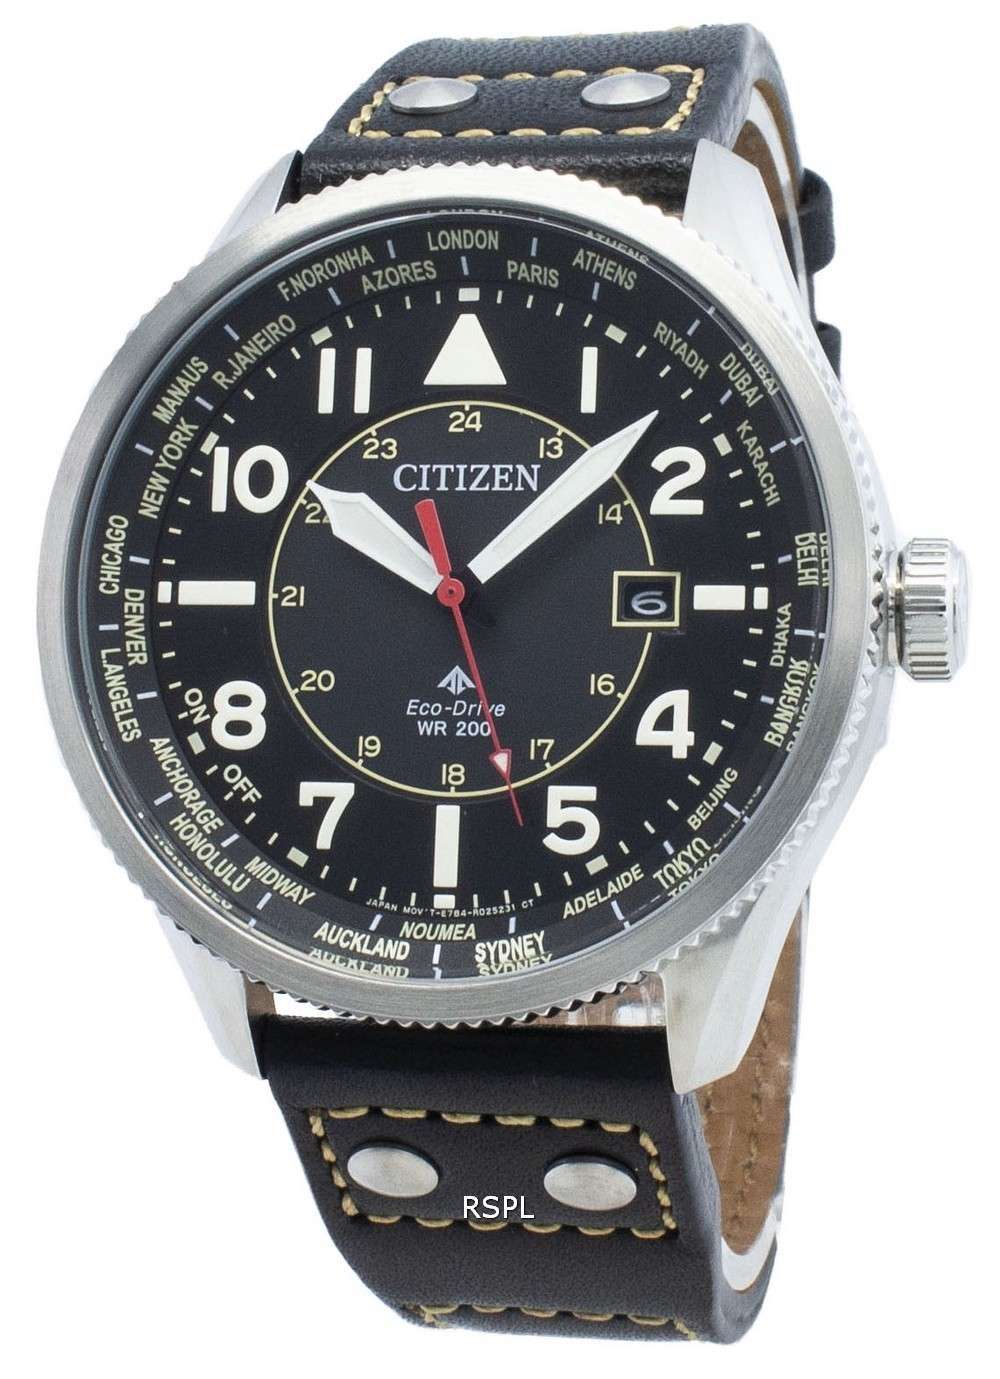 Reloj Citizen Promaster Nighthawk BX1010-02E World Time Eco-Drive 200M